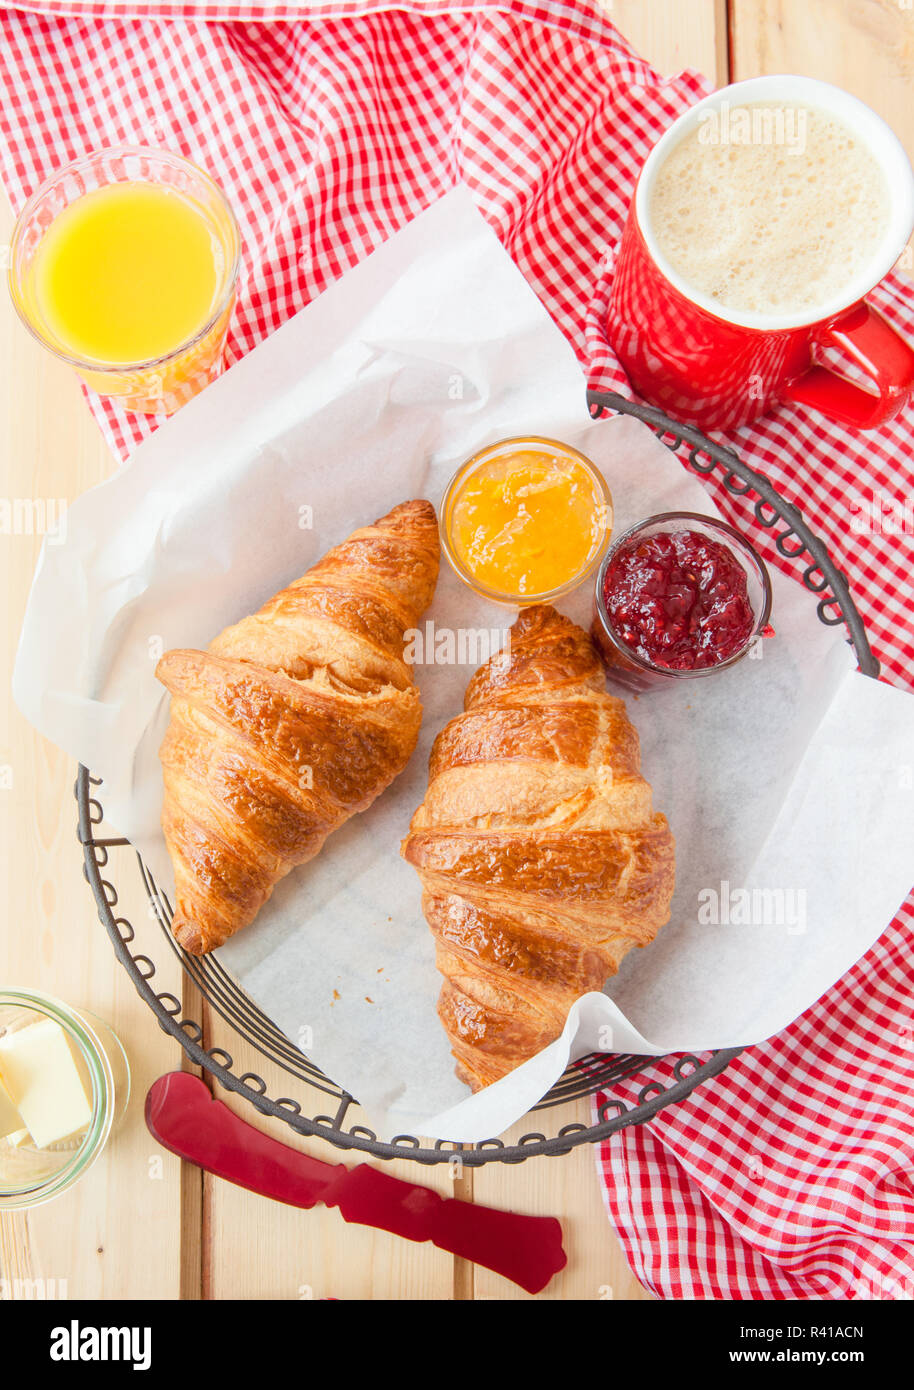 fresh croissants for breakfast Stock Photo